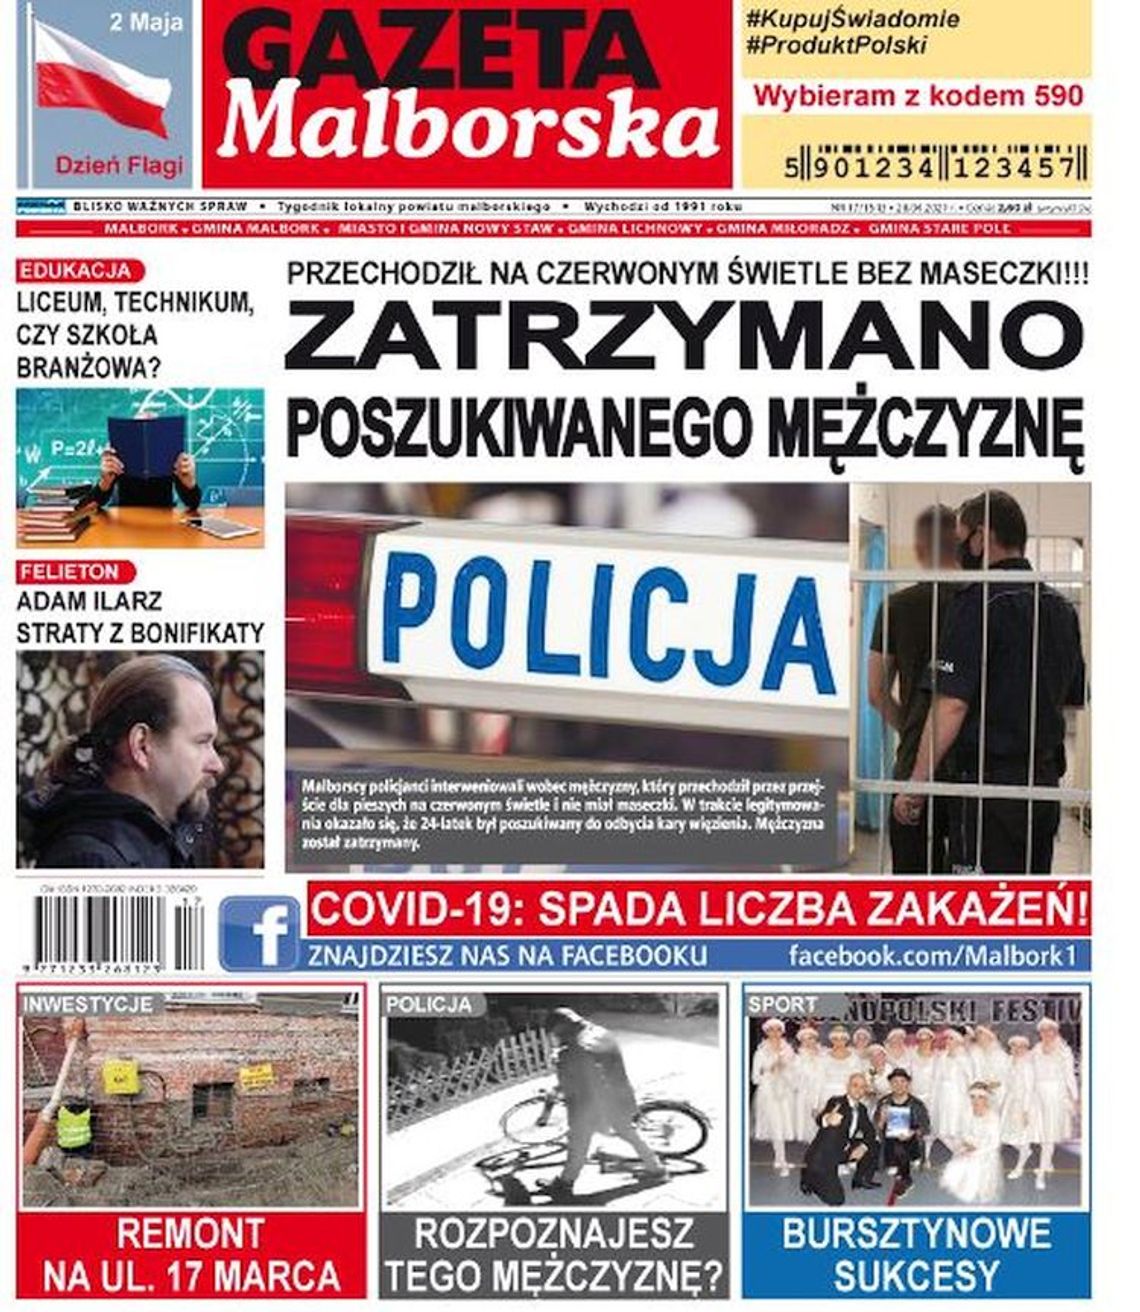 Najnowszy numer Gazety Malborskiej już w sprzedaży. Świeże informacje z Malborka i gmin naszego powiatu już w Twoim kiosku. Co w środku?